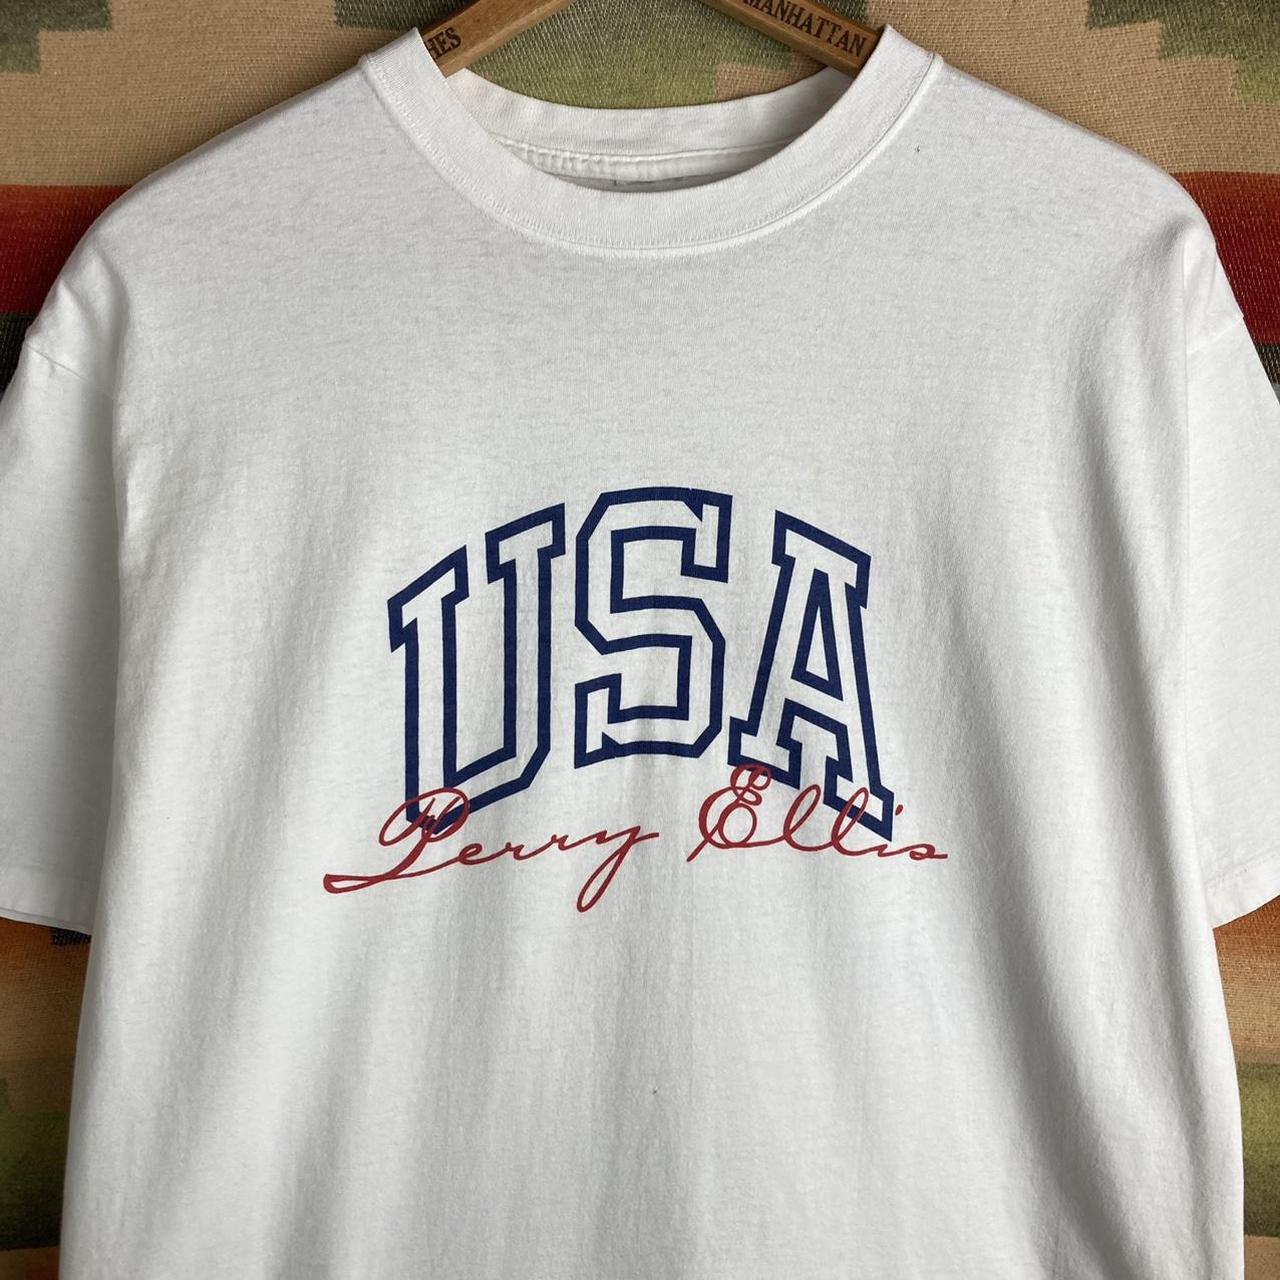 Vintage 90s Perry Ellis USA White T-shirt | Size...